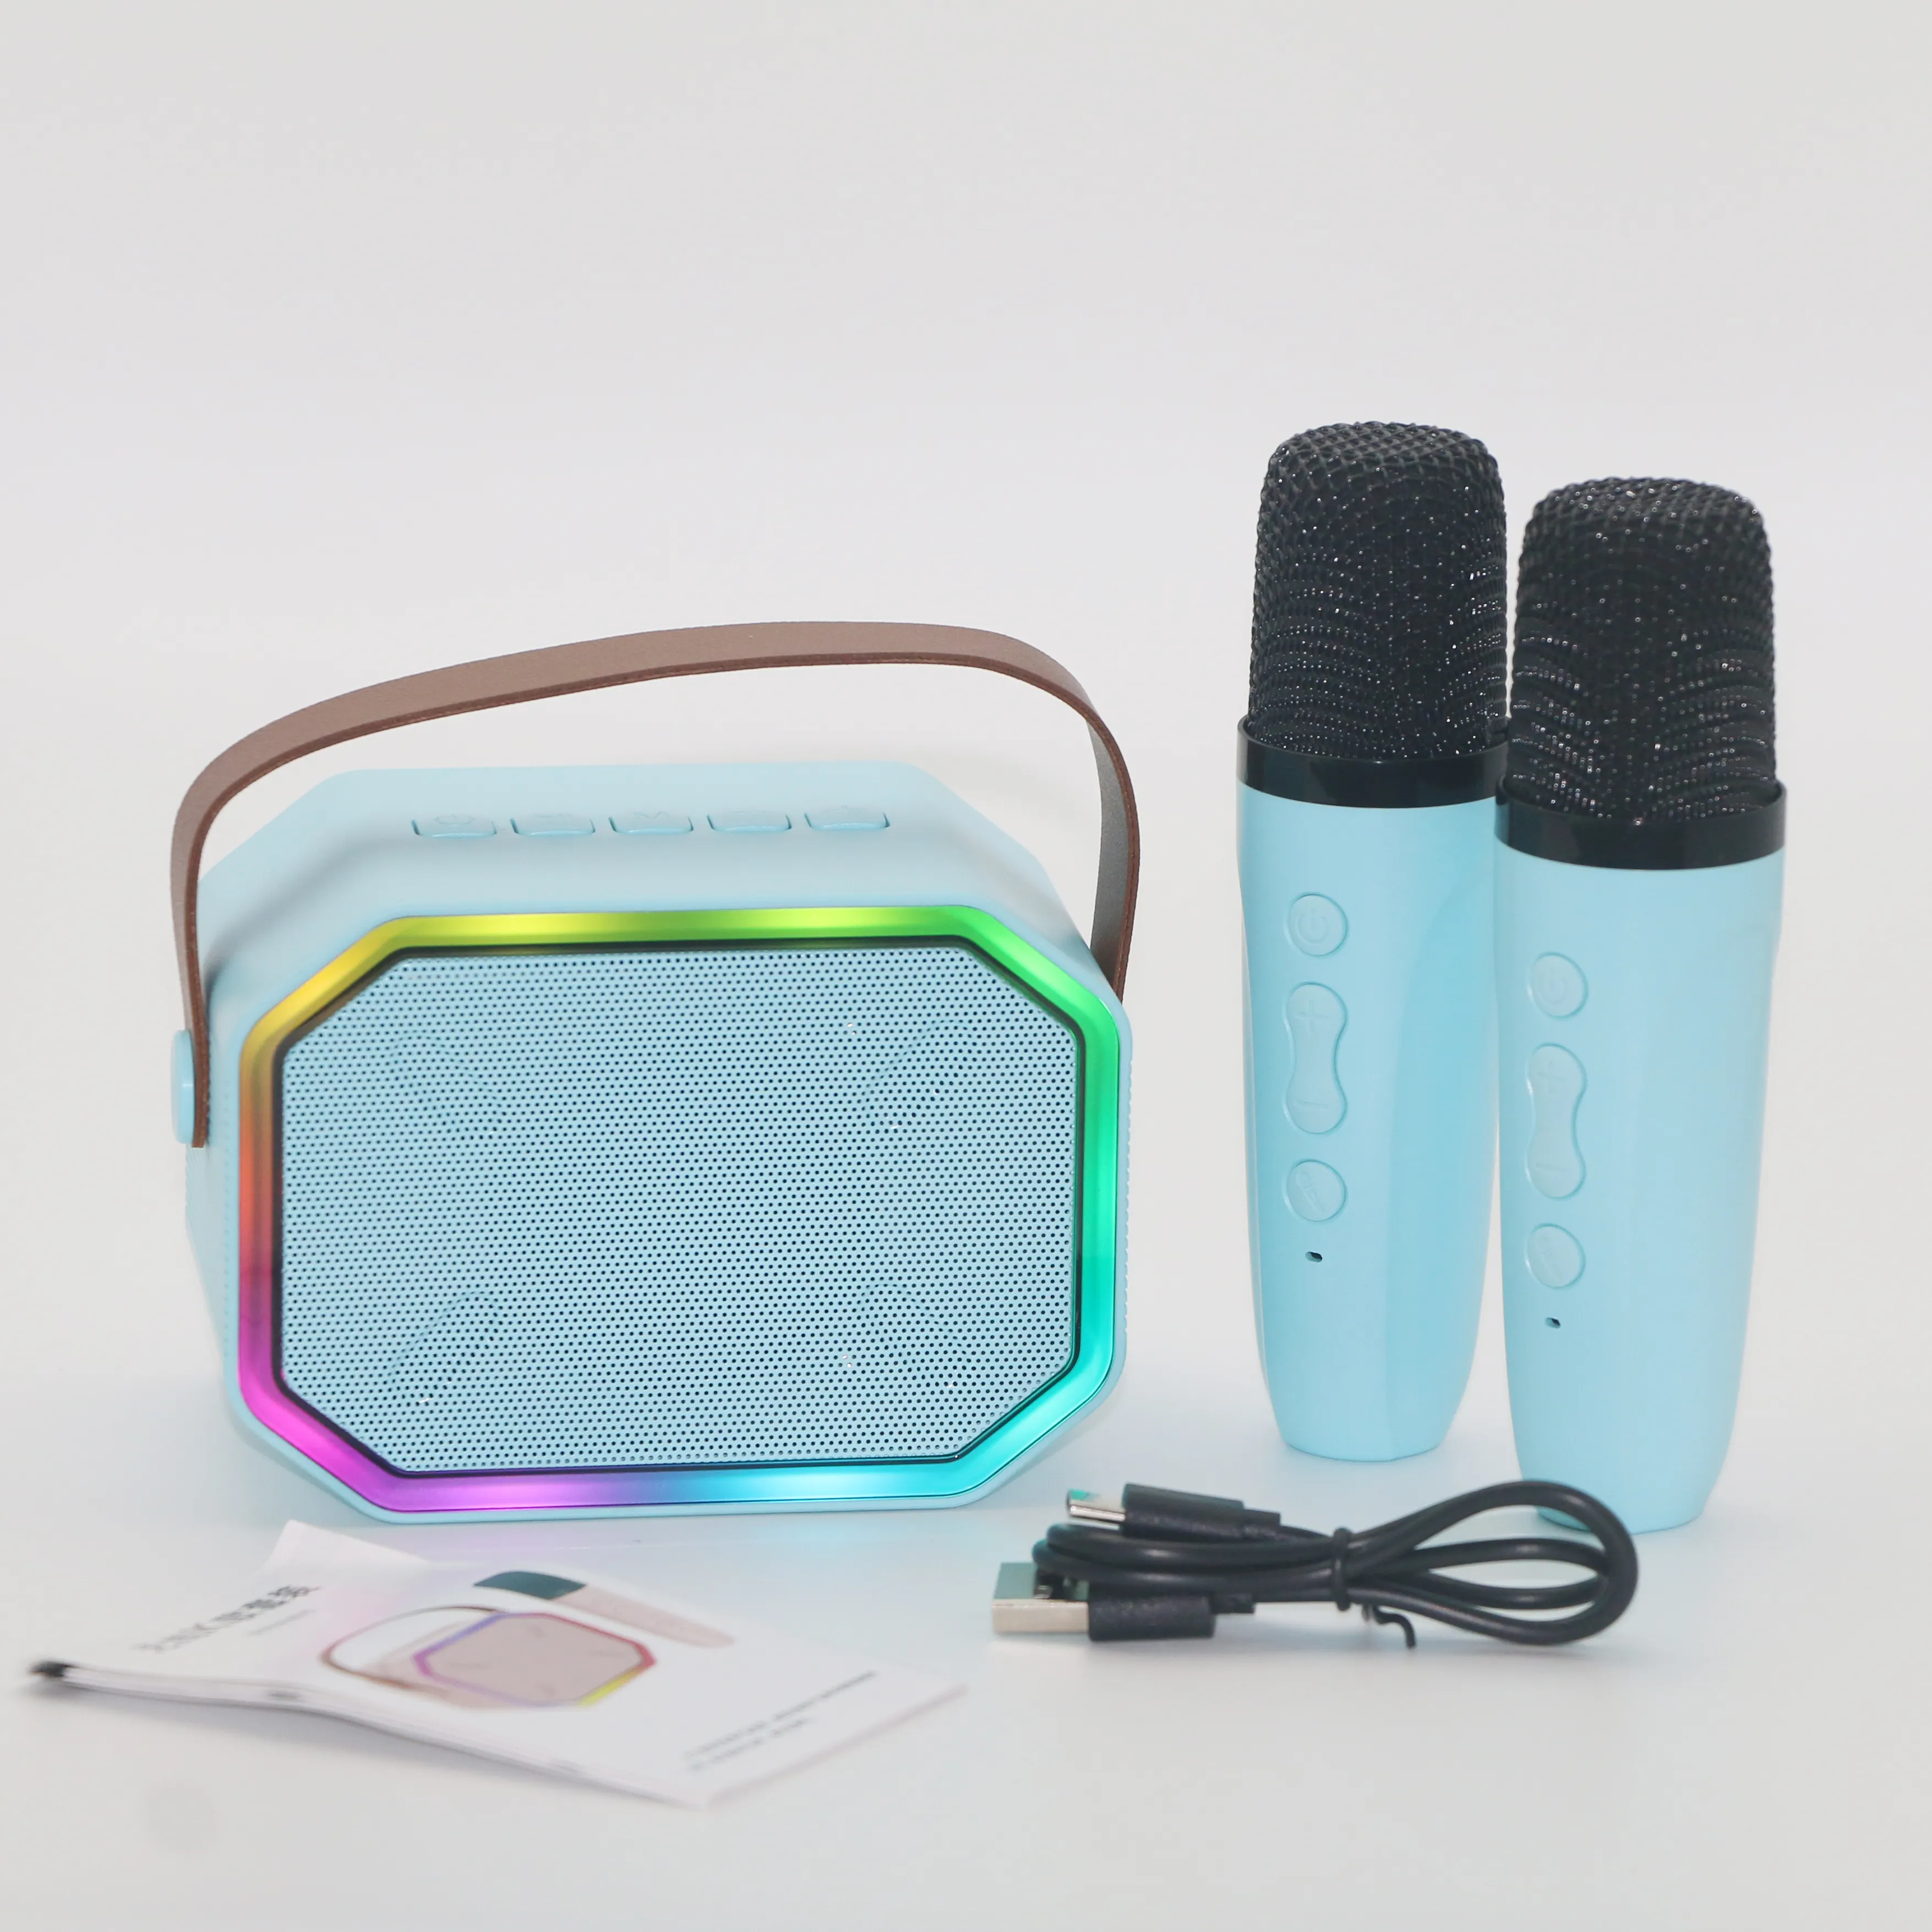 Özel taşınabilir hediye parti kutusu Stereo ses Ktv kablosuz oyuncu Mini mikrofon ev Karaoke seti mikrofonlu hoparlör ve bluetooth